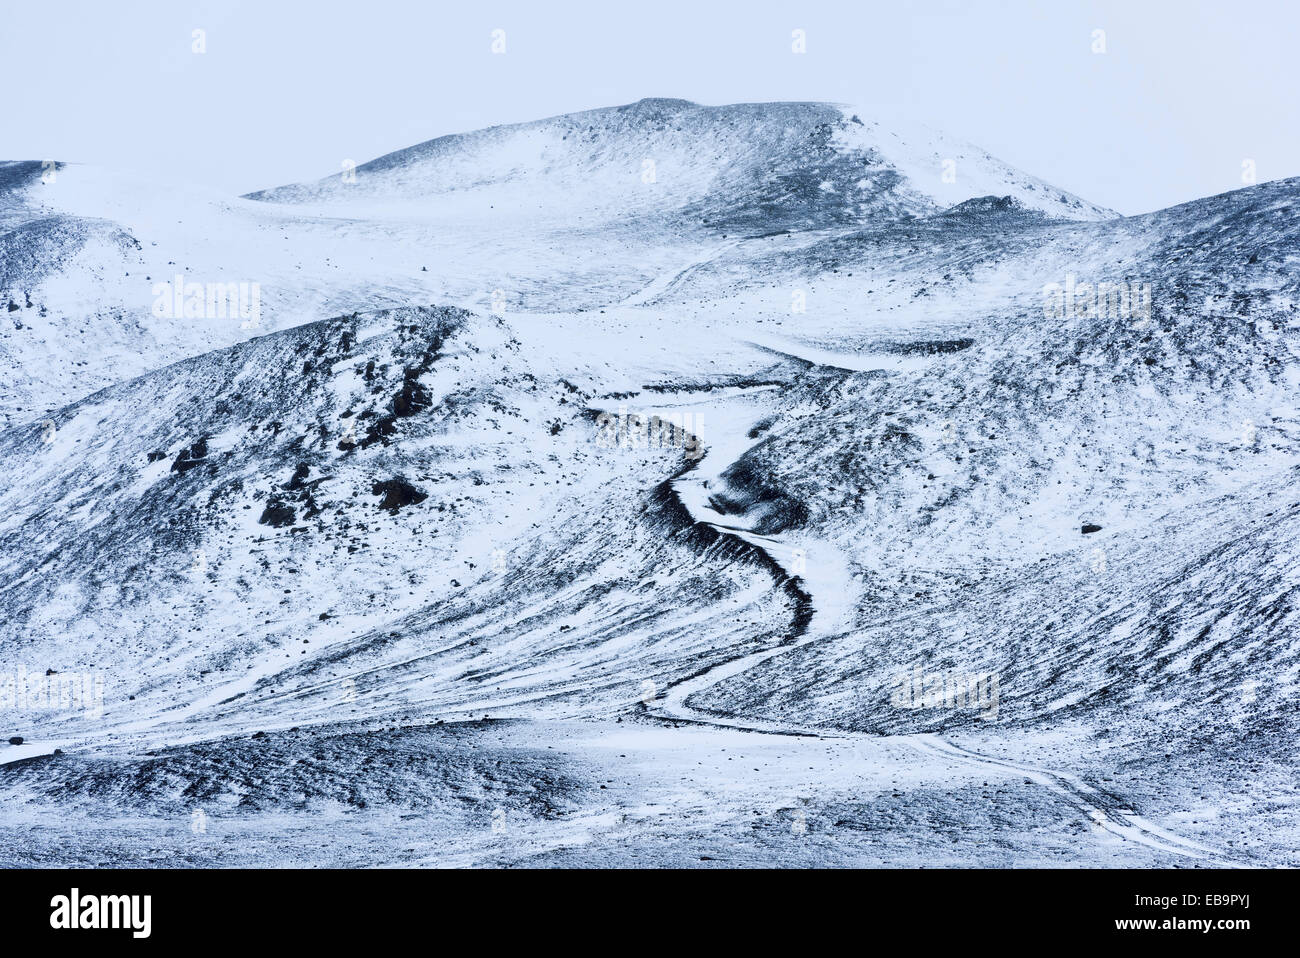 Snowy Hills, nordöstliche Region, Island Stockfoto